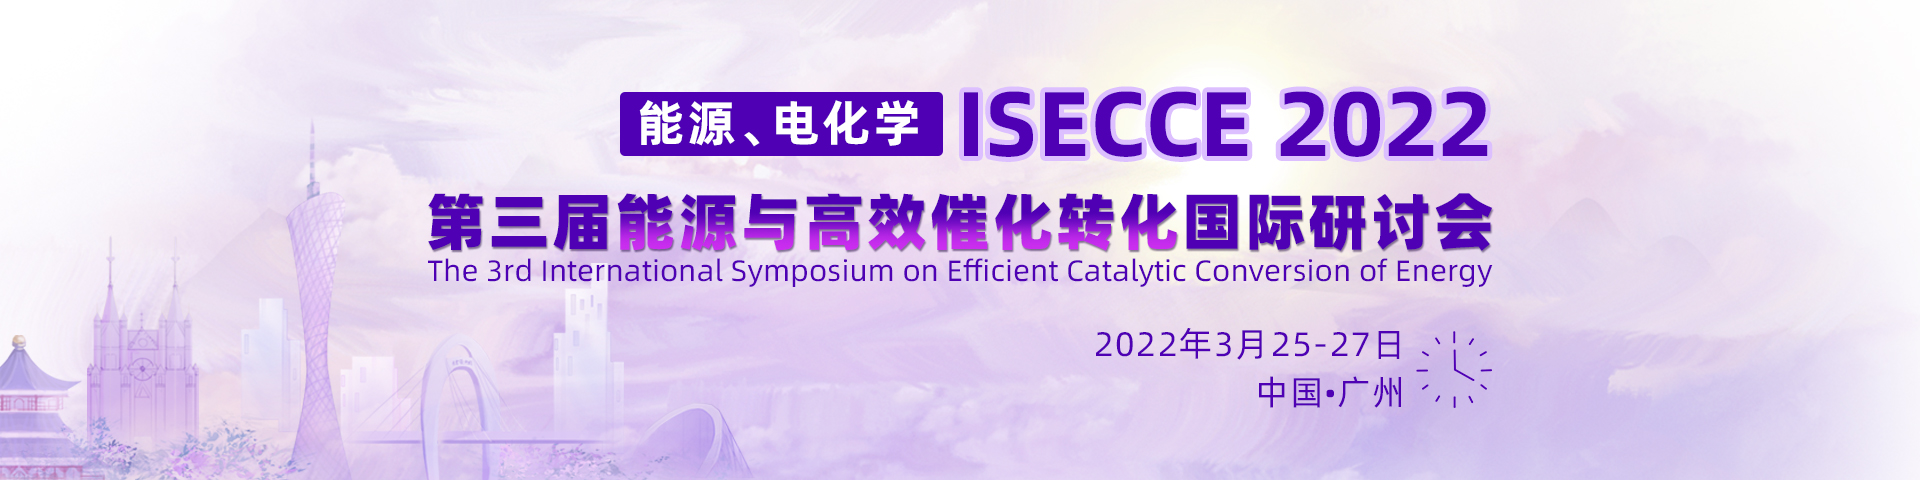 3月广州-ISECCE-2022-banner-陈军-20211201.jpg